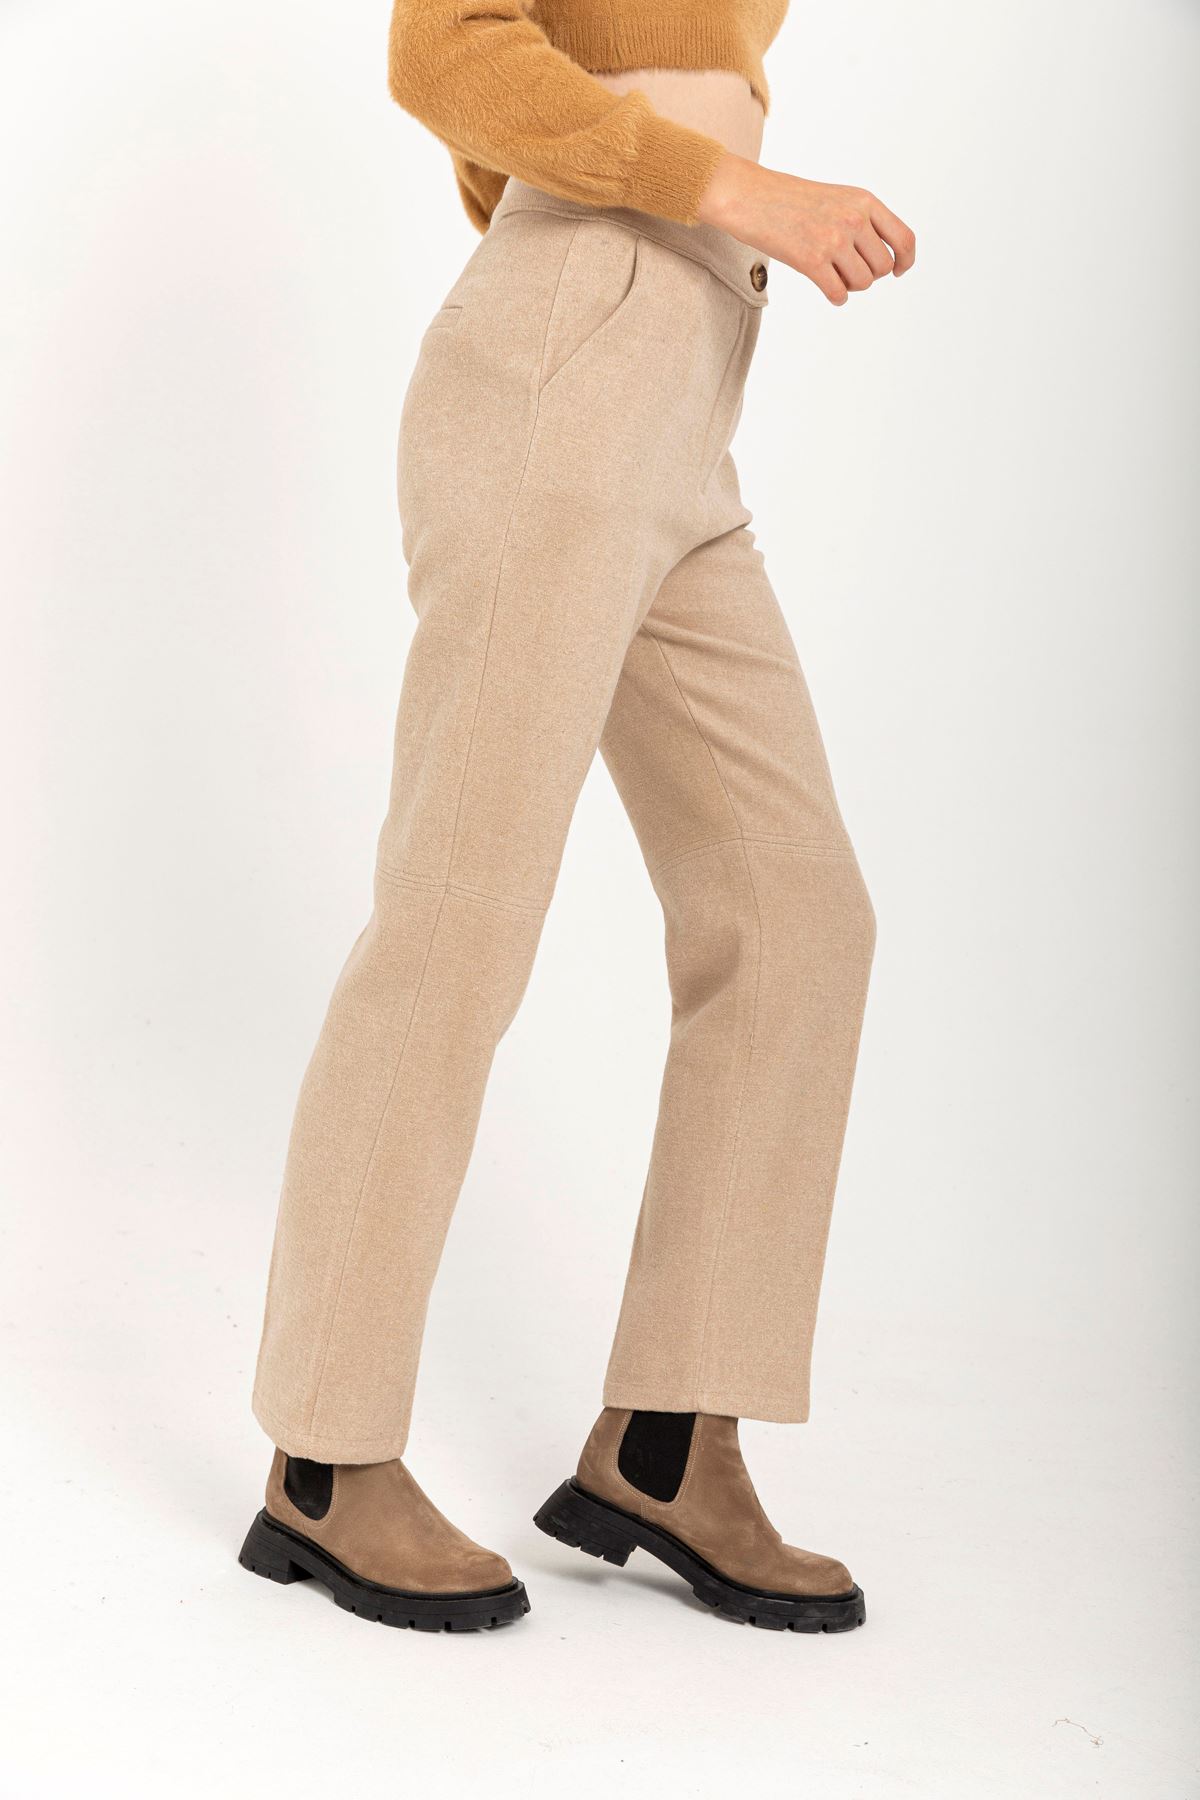 шерстяная ткань длинный джоггеры женские брюки - Бежевый